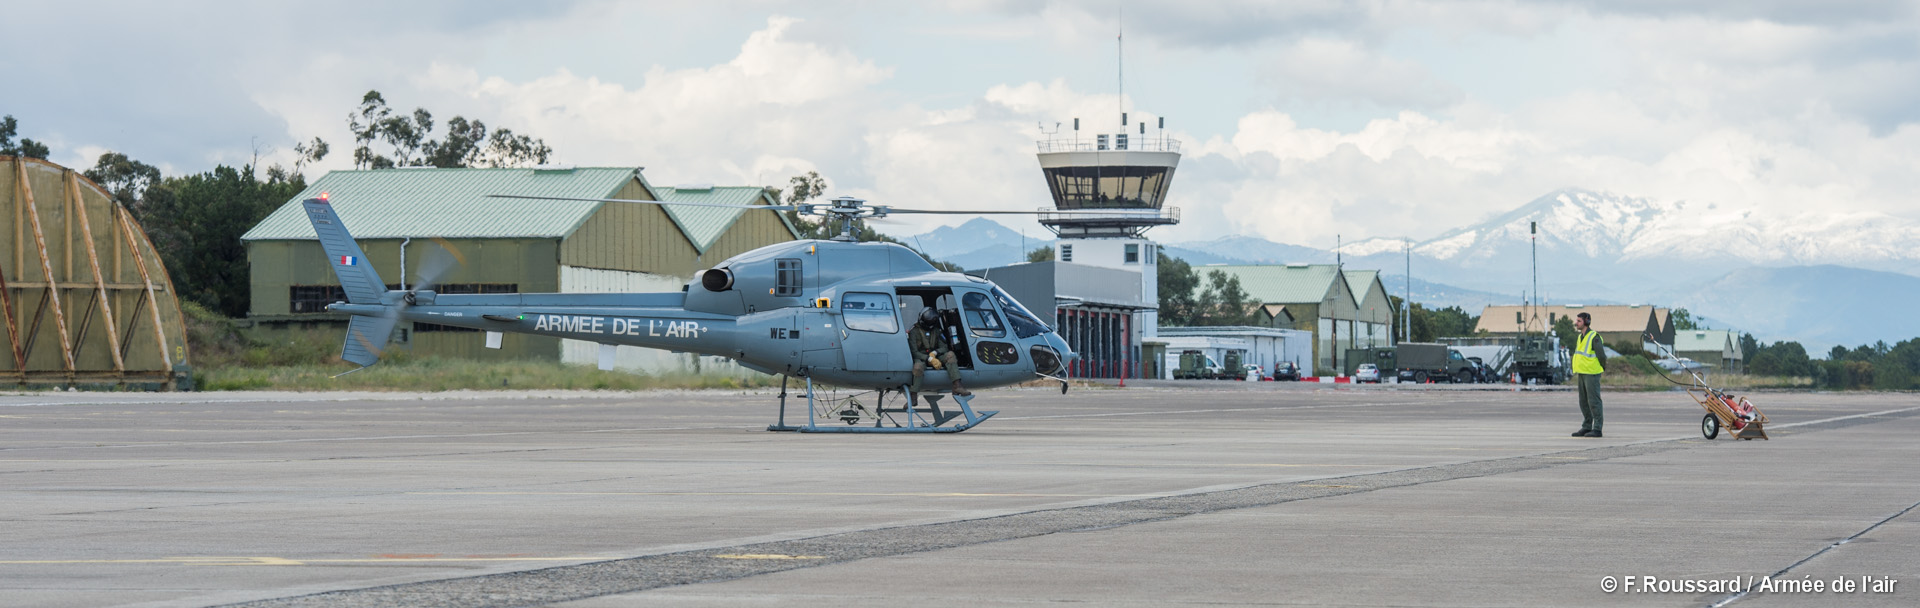 Ventiseri-Solenzara : reprise des activités opérationnelles sur la base aérienne 126